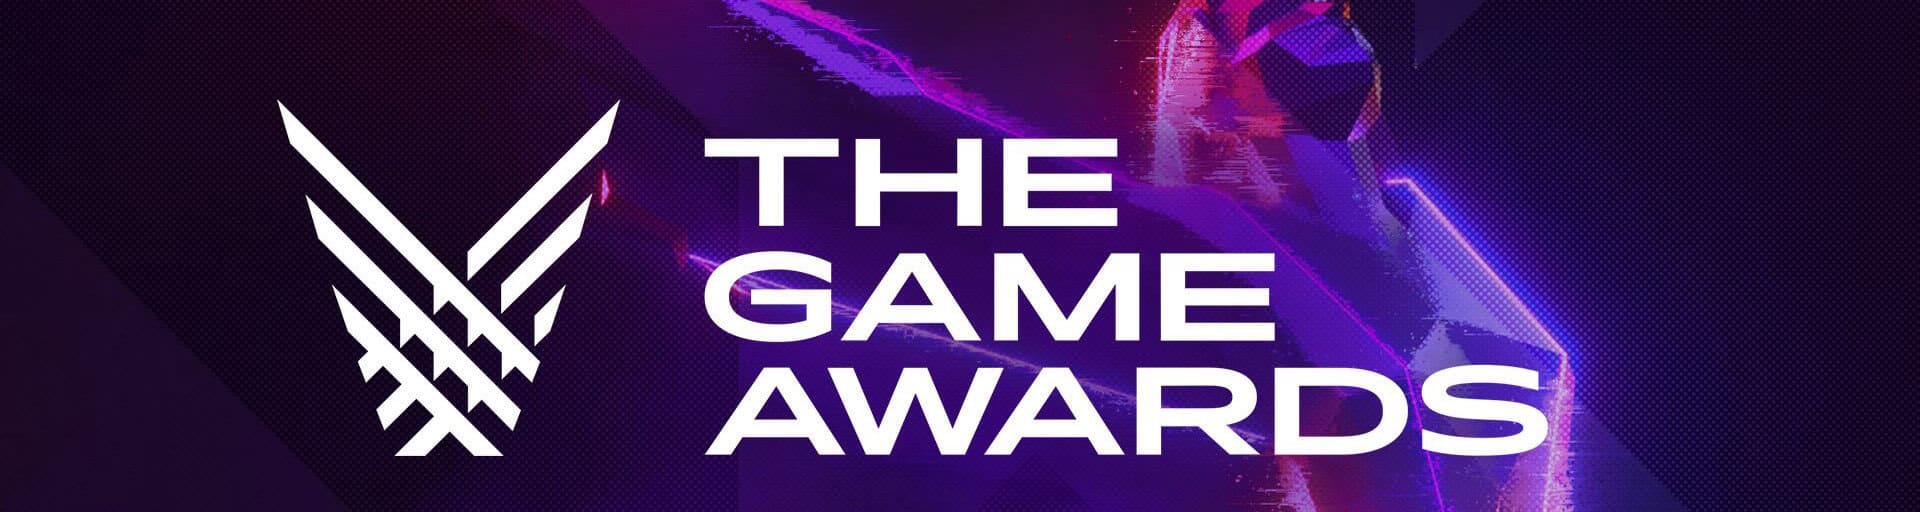 The Game Awards 2020: дата проведения, номинанты